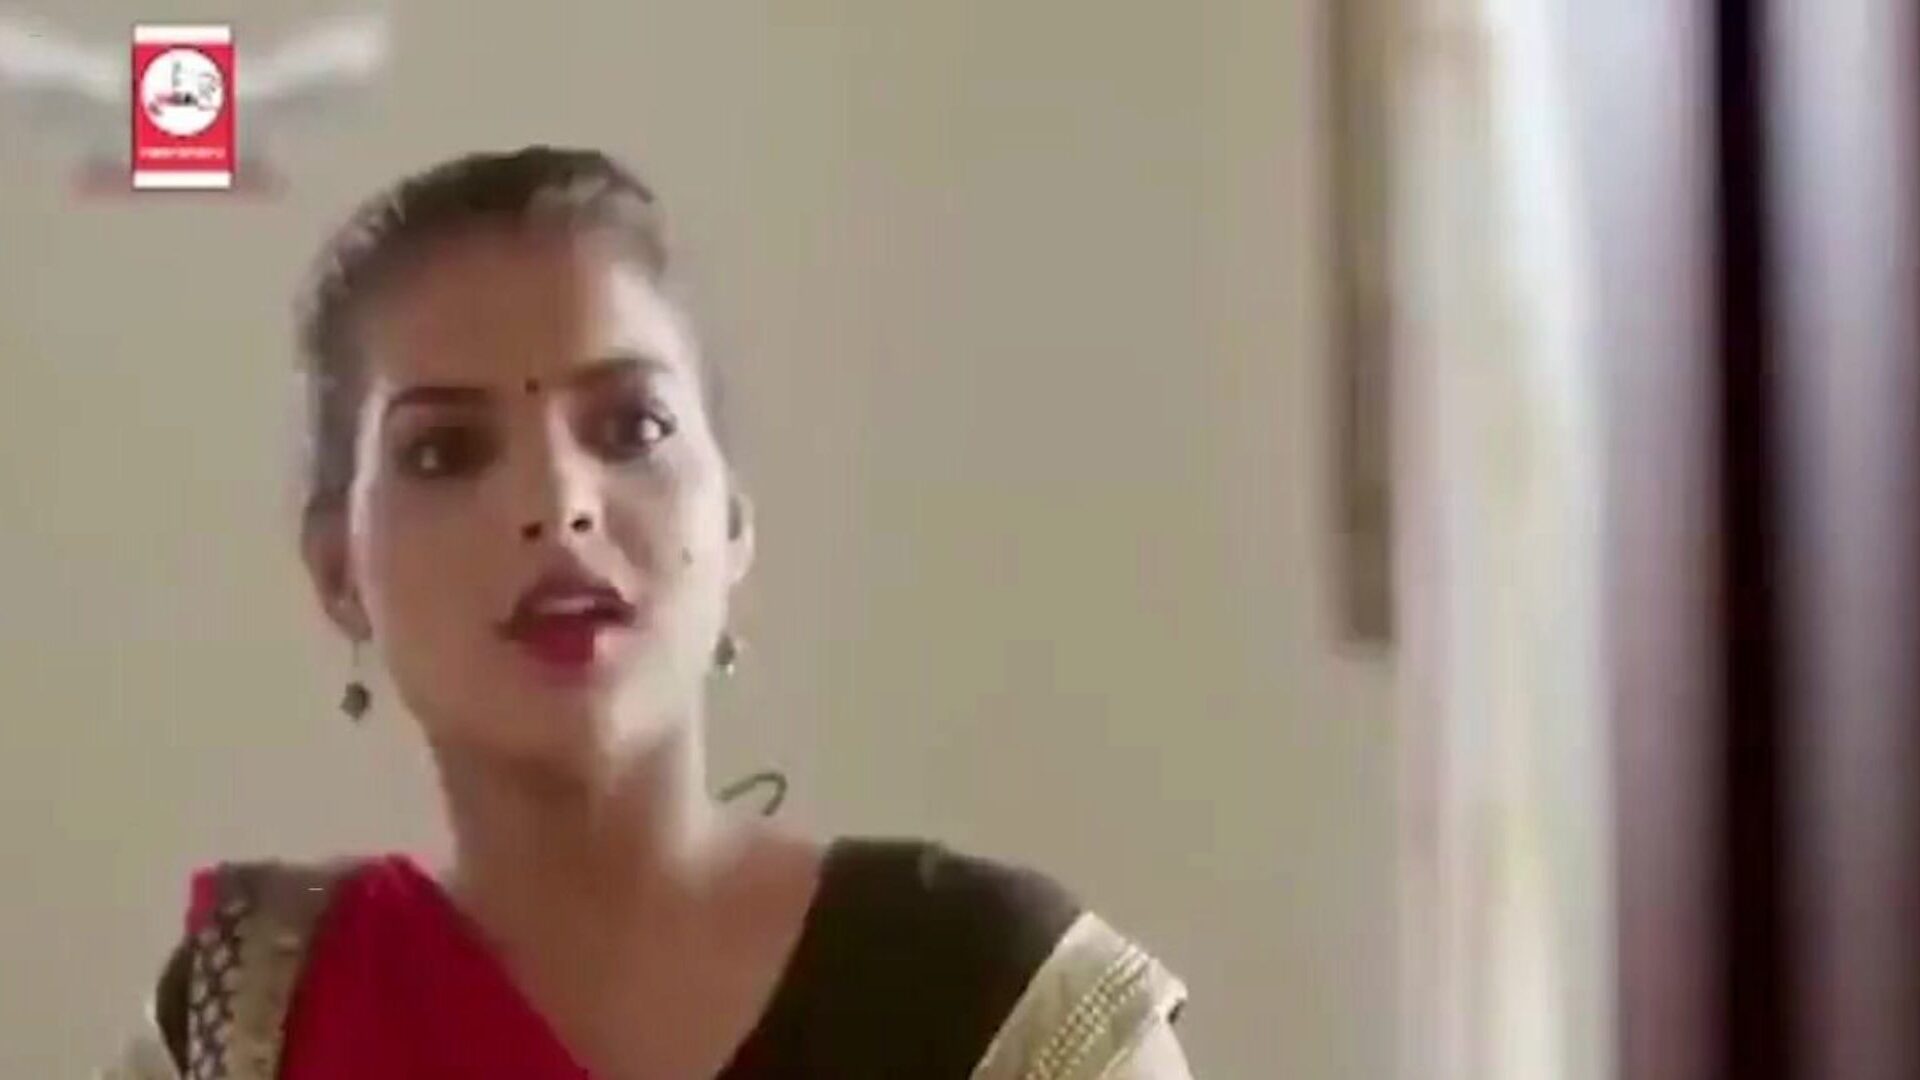 uusi ja viimeinen kuuma intialainen verkkosarja 2020, porno 2a: xhamster katsella uusi ja viimeinen kuuma intialainen verkkosarja 2020 -elokuvakohtaus xhamsterissa, massiivinen HD fucky-fucky -putkisivusto, jossa on paljon ilmaisia ​​hardcore-suihkuja ja punaisia ​​putkia kuumia pornoelokuvia